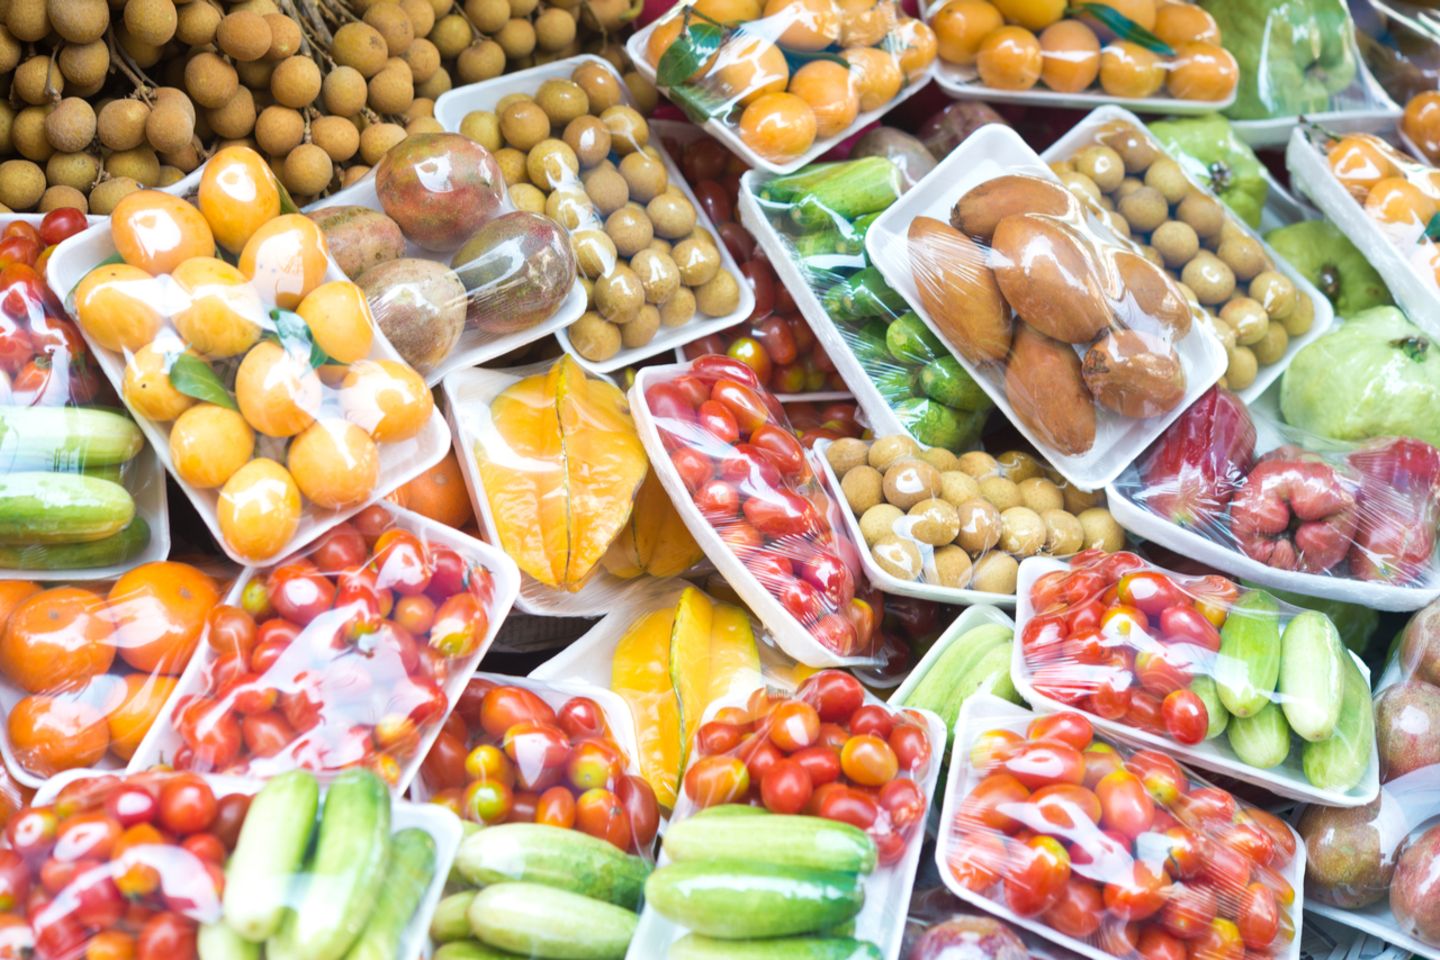 Gemüse und Obst in Plastik